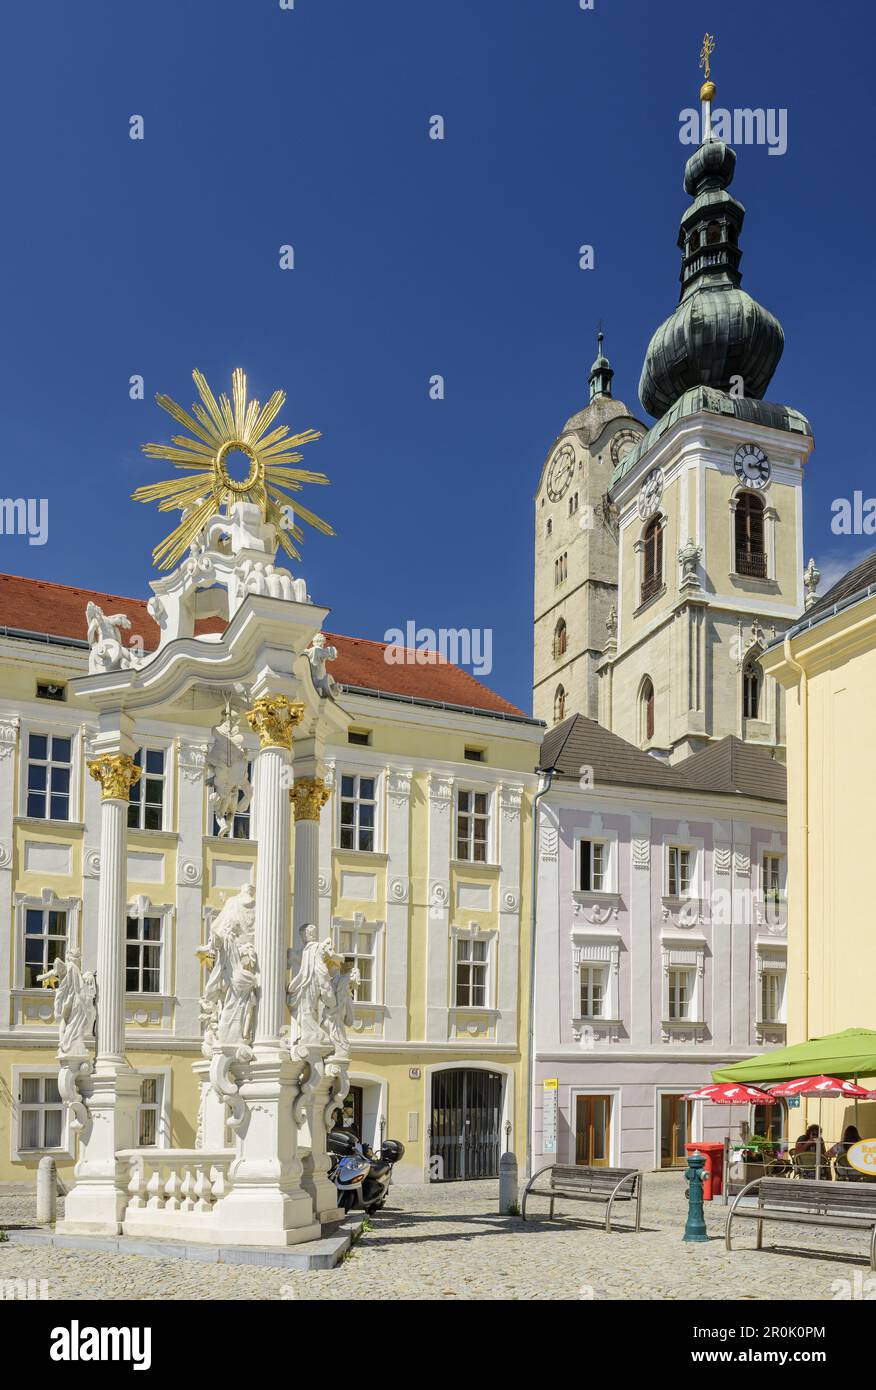 Main square with pillar Dreifaltigkeitssäule and church in background, Stein an der Donau, Krems, Wachau, Danube Bike Trail, UNESCO World Heritage Sit Stock Photo